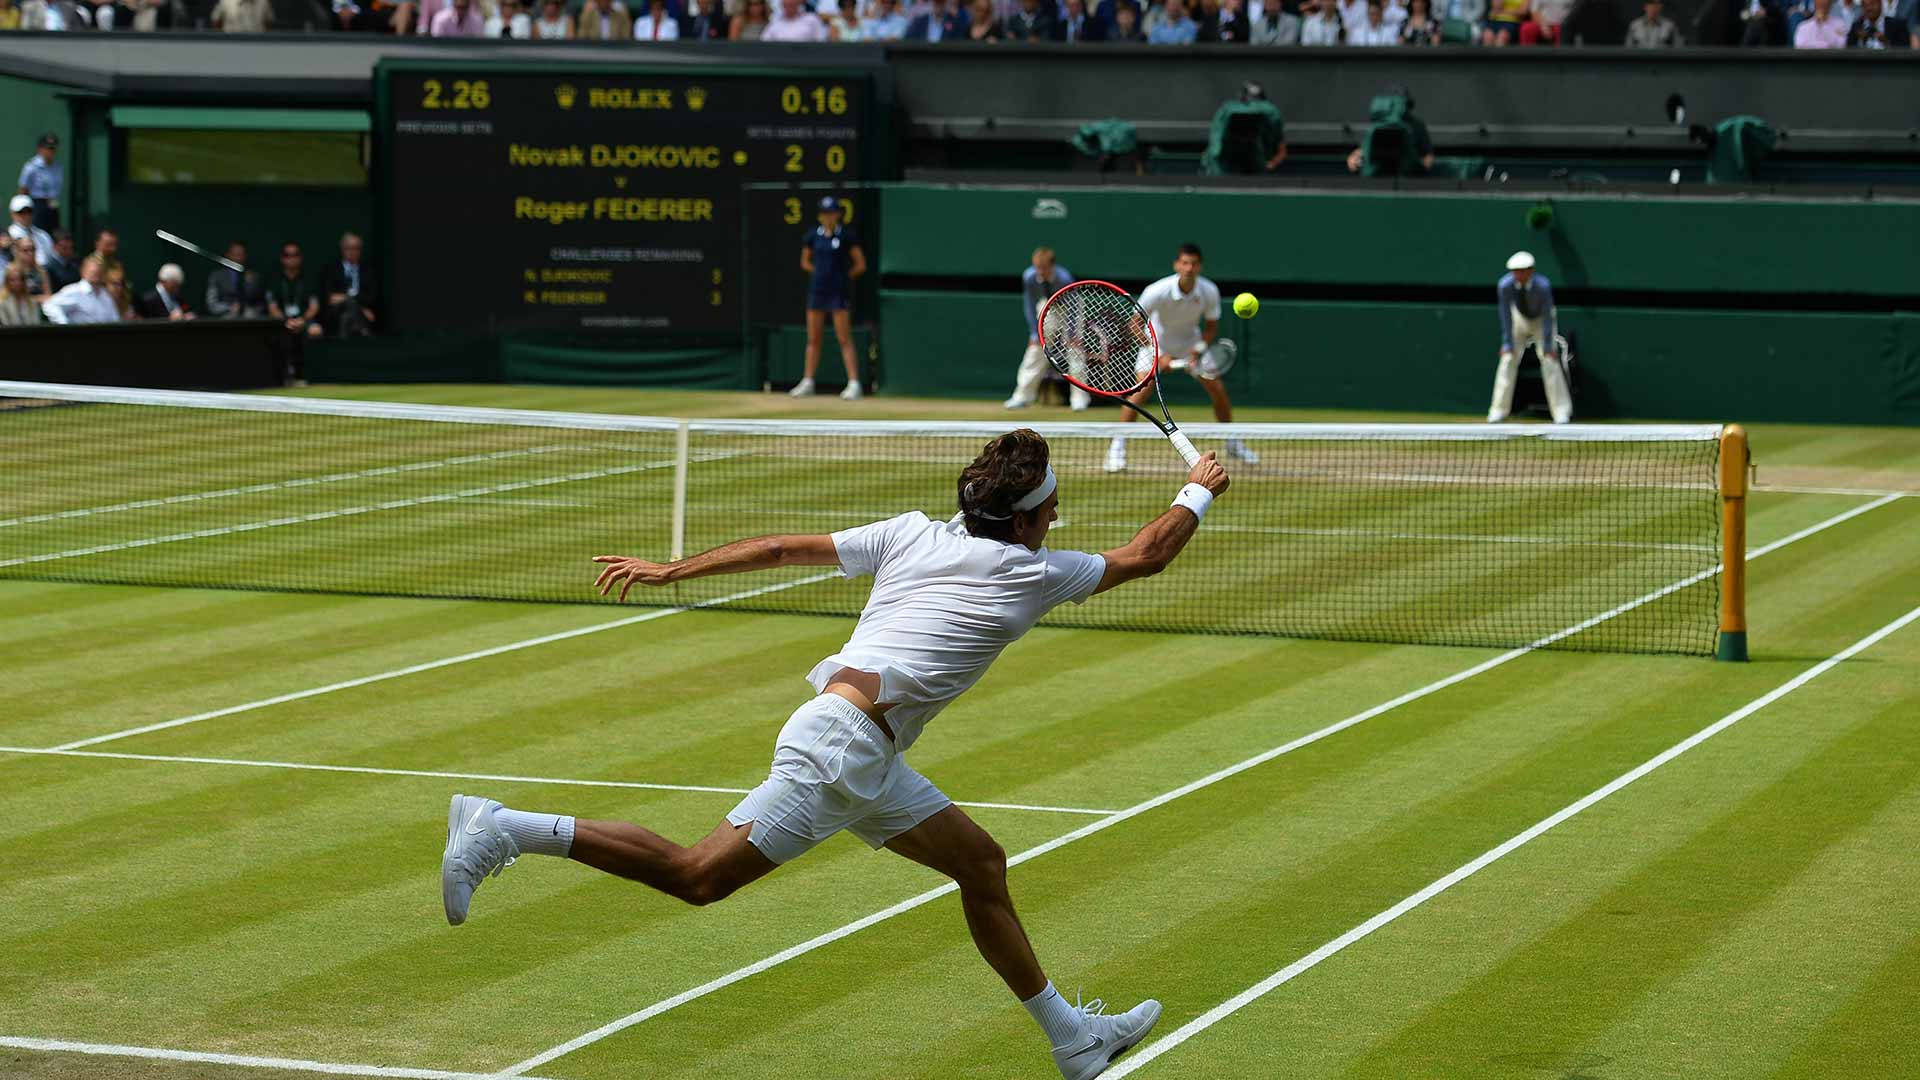 Wimbledonbanan Med Roger & Novak. Wallpaper